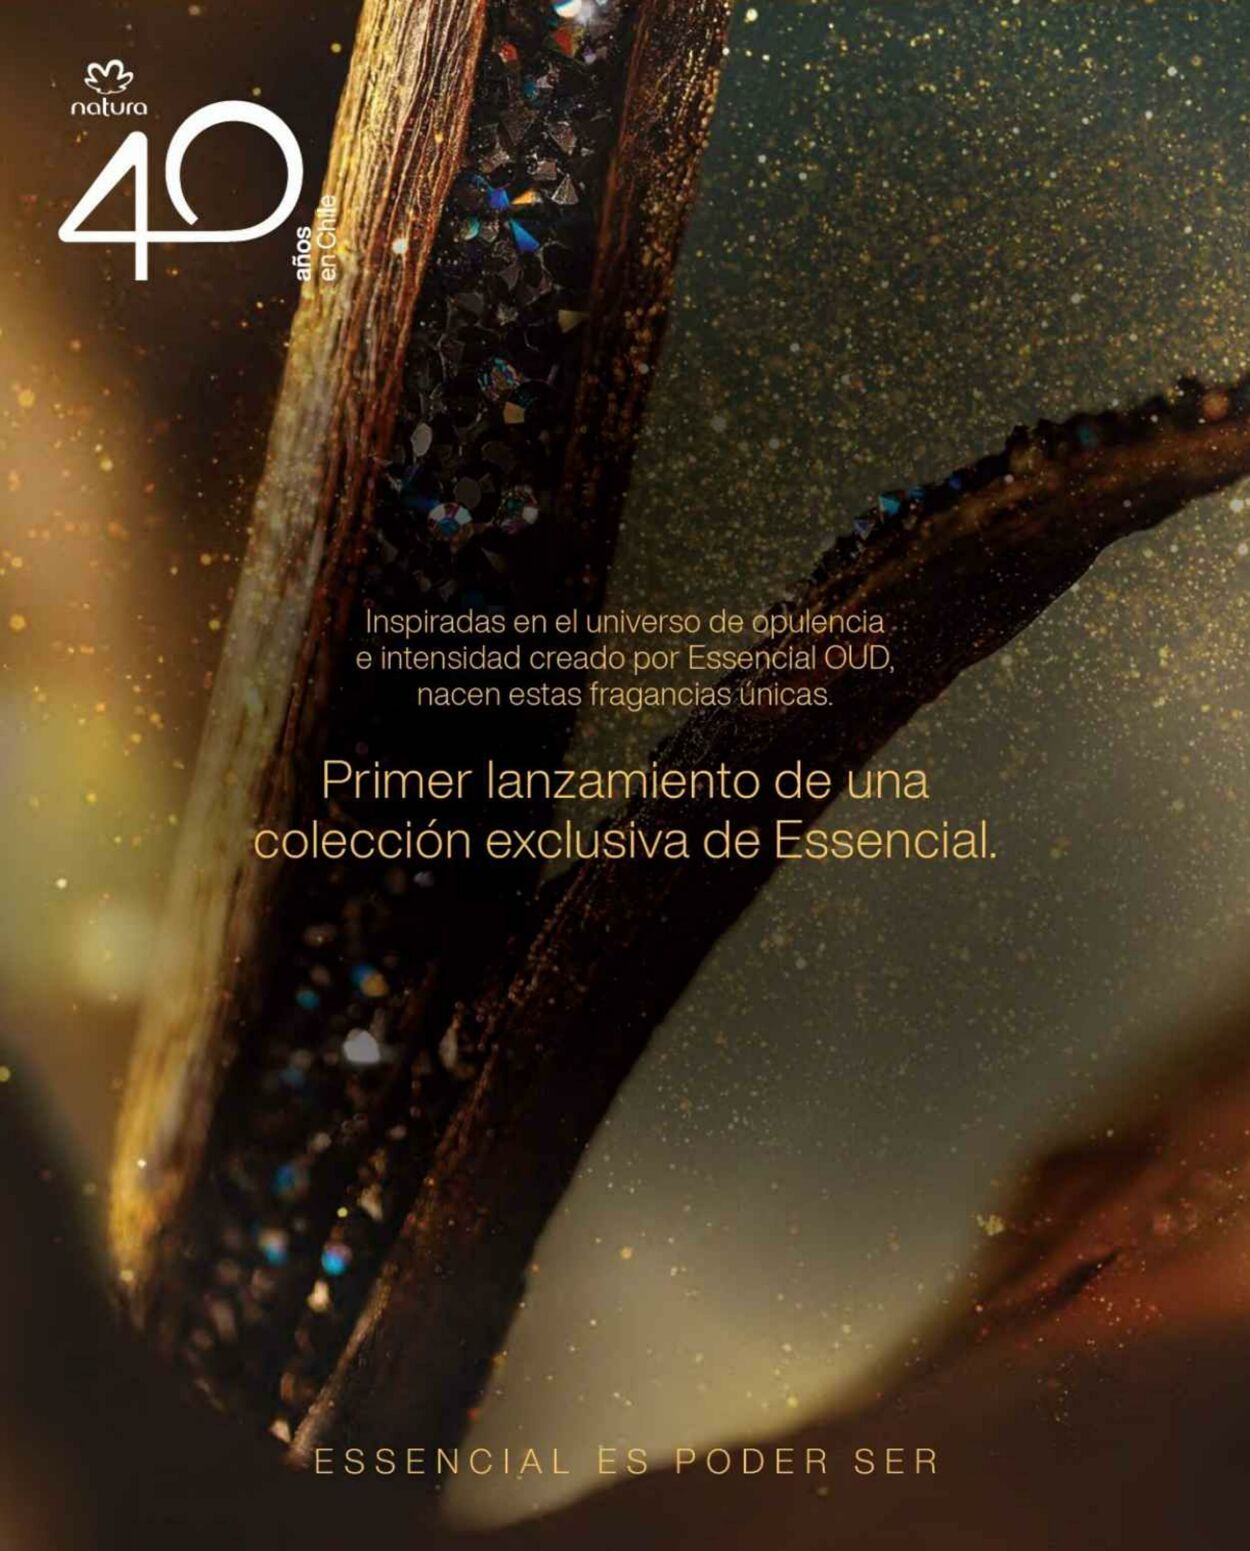 Catálogo Natura 15.09.2022 - 30.09.2022